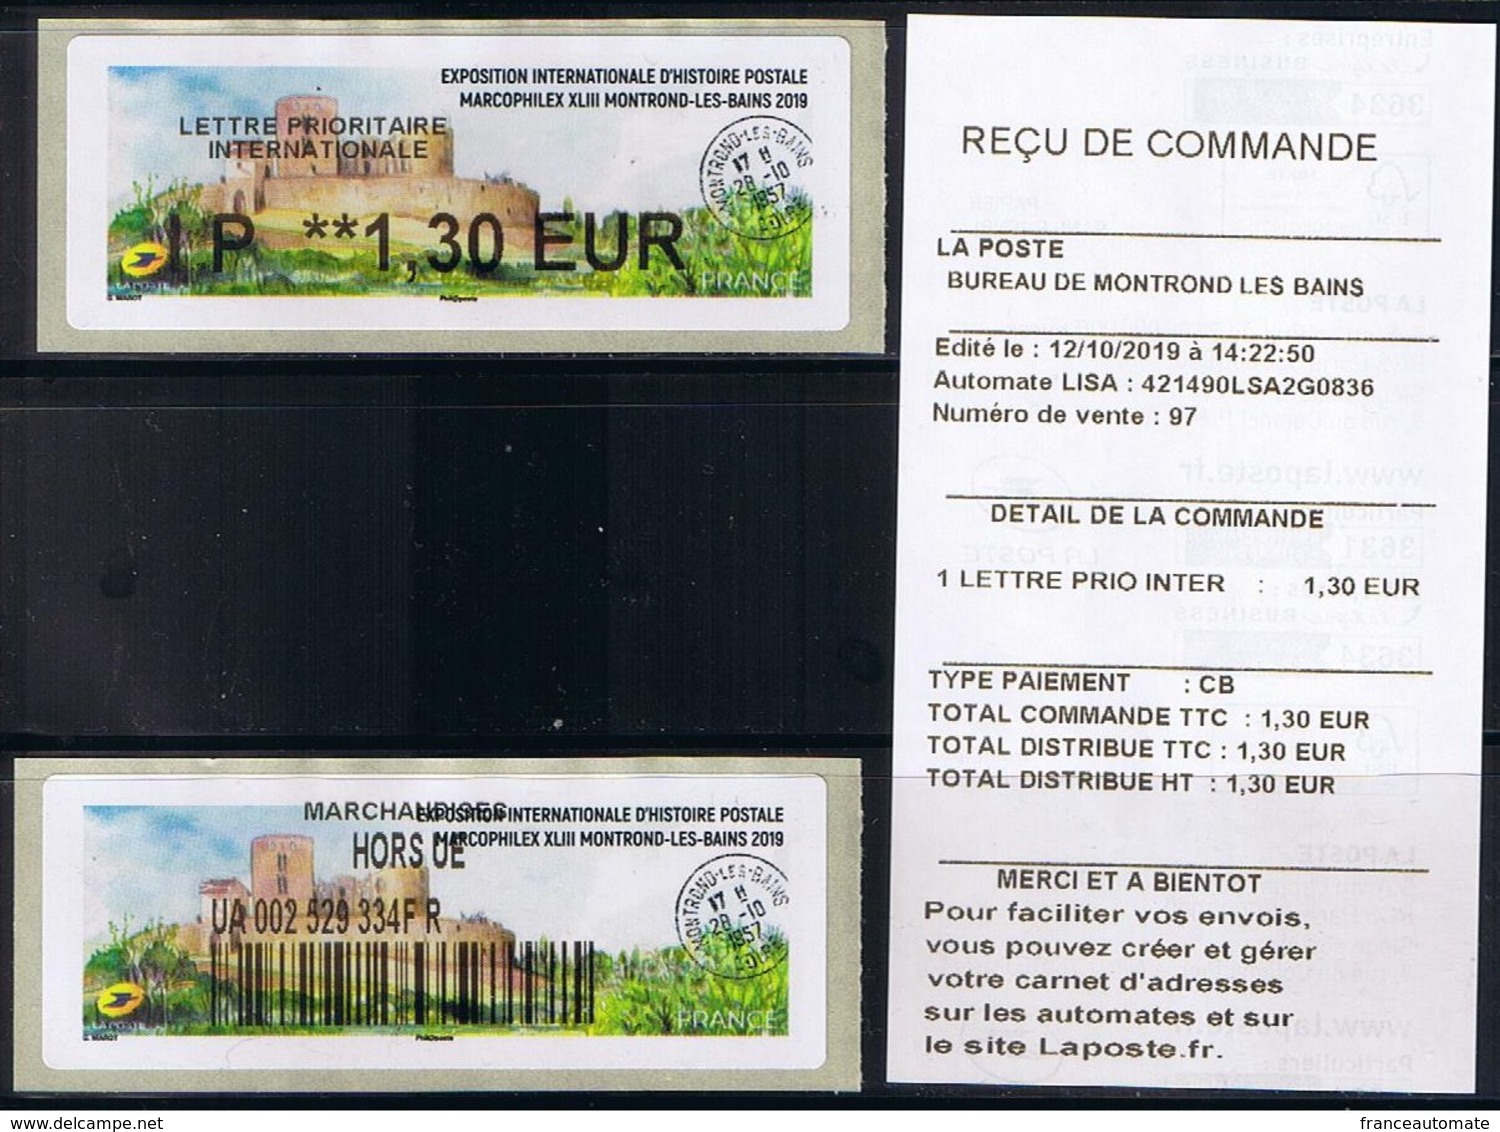 2 Atms, Lisa2, PRIORITAIRE INTERN. IP 1.30€, MARCOPHILEX XLIII MONTROND LES BAINS 2019. Le Château De MONTROND LES BAINS - 2010-... Illustrated Franking Labels